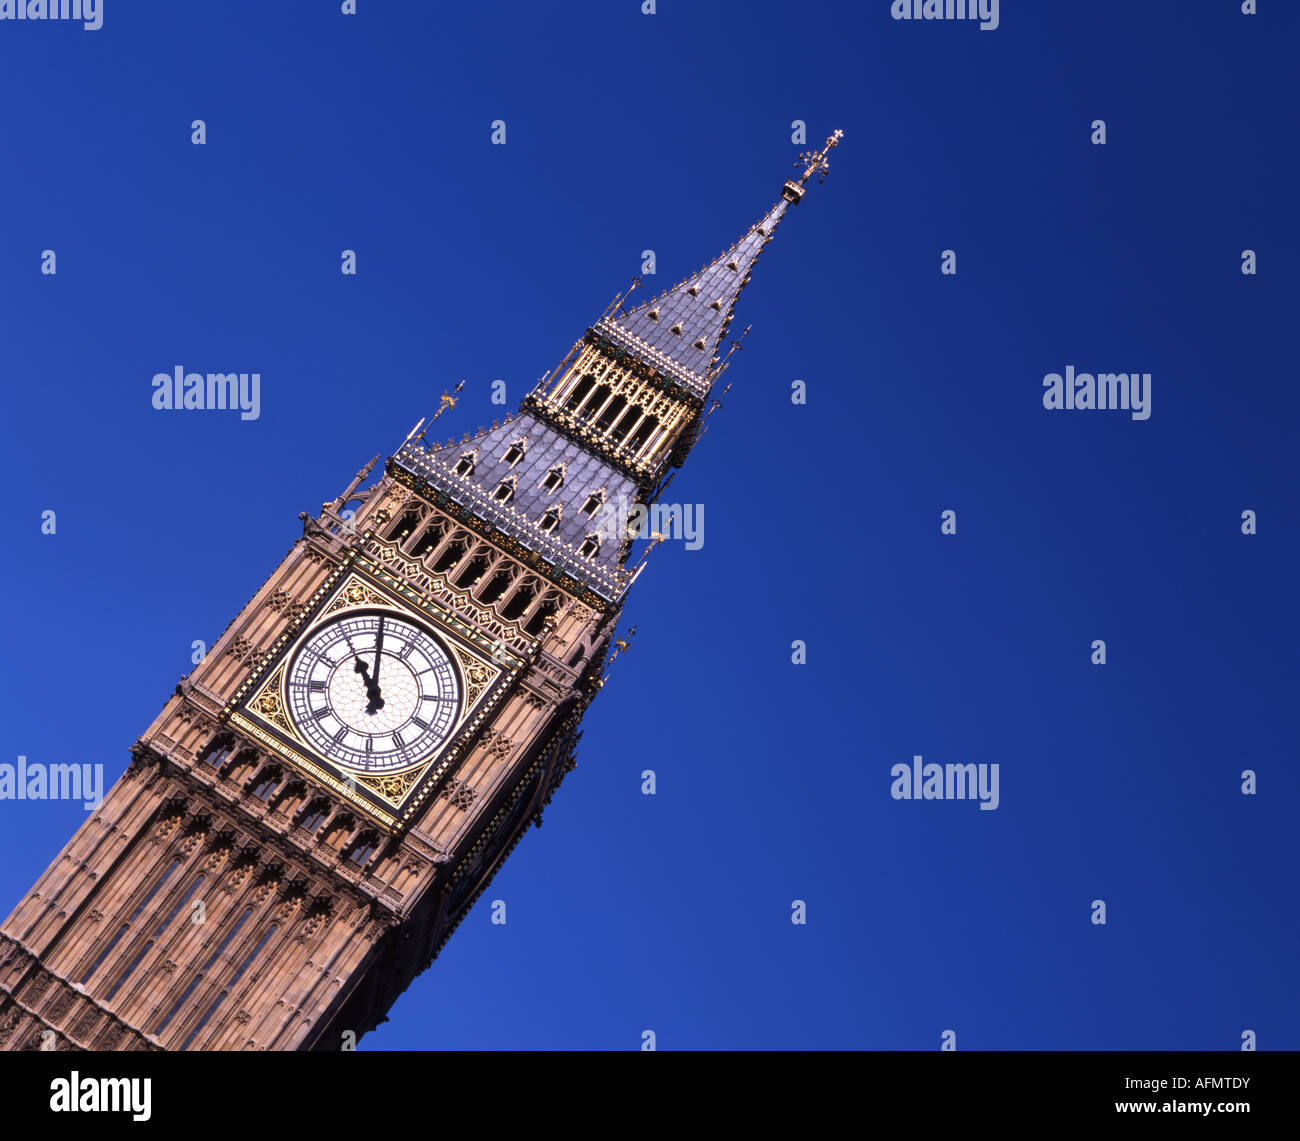 Il Big Ben e la Torre dell Orologio, Palazzo di Westminster dal Tamigi. In stile vittoriano di stile gotico. Foto Stock